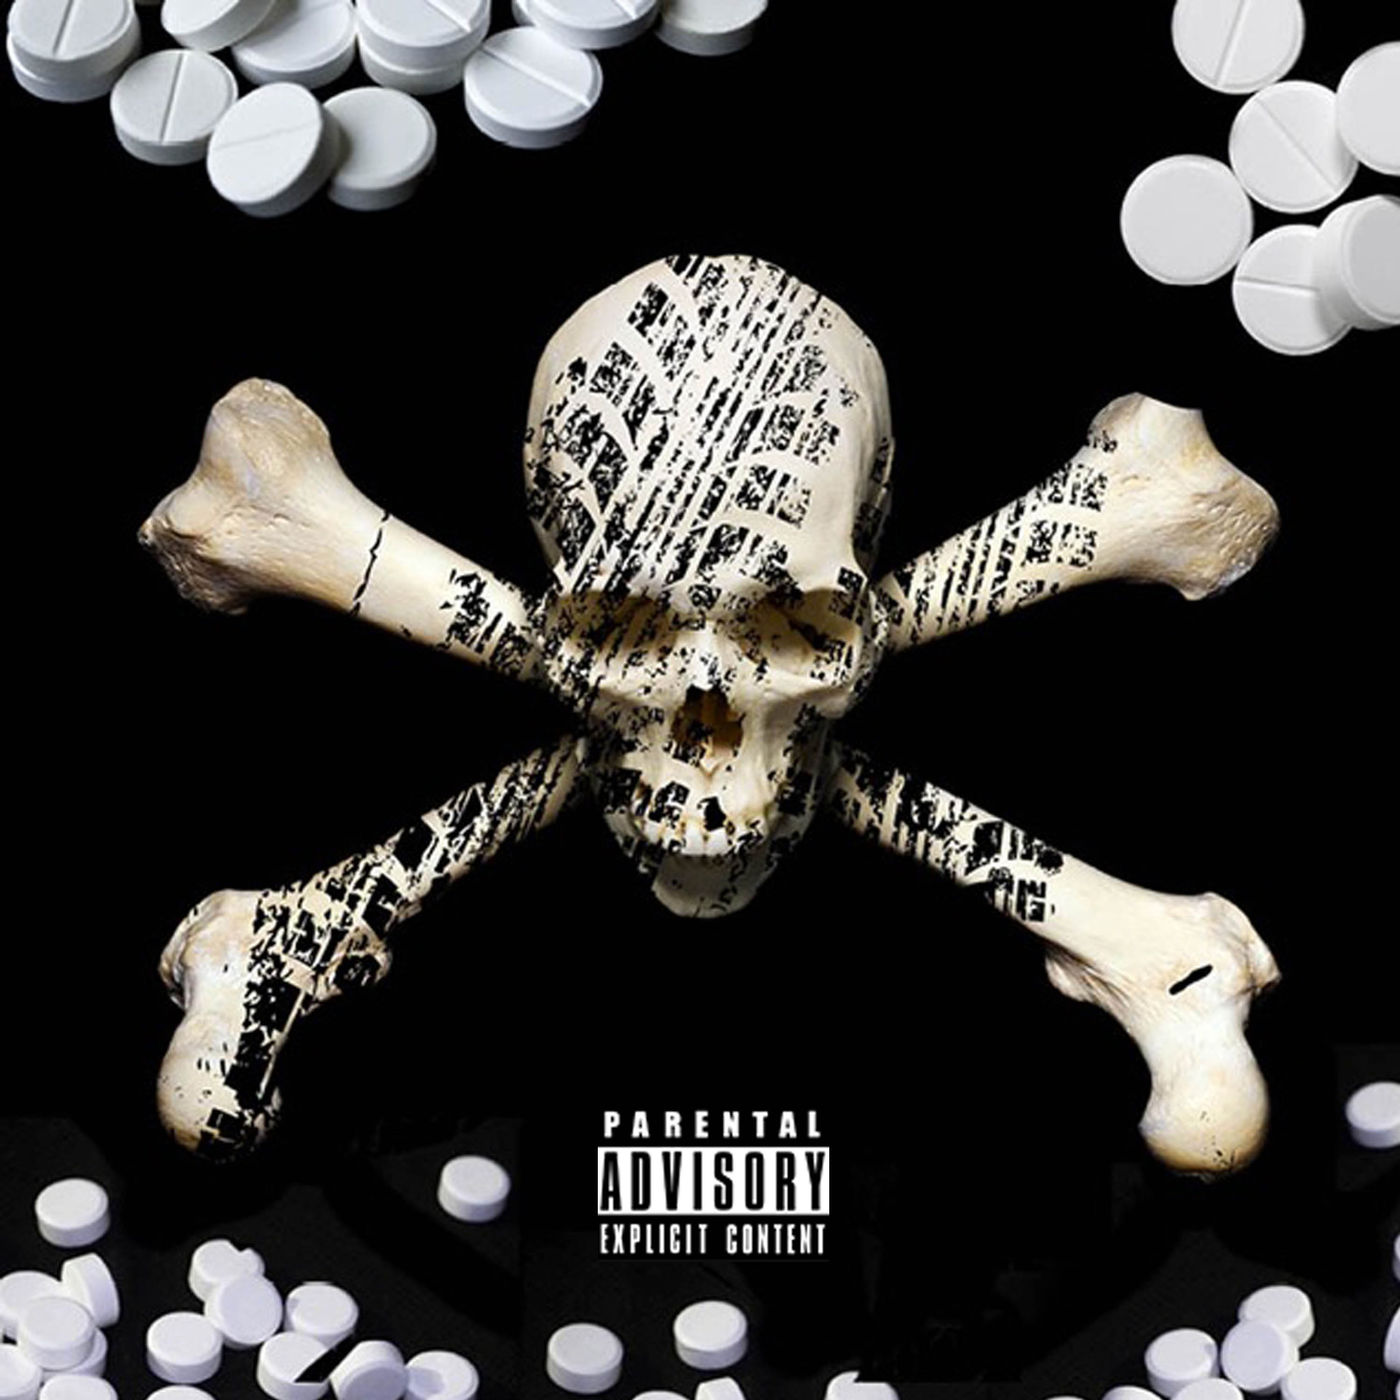 New Music: Chris Brown – “Pills & Automobiles” Feat. Yo Gotti, A Boogie & Kodak Black [LISTEN]